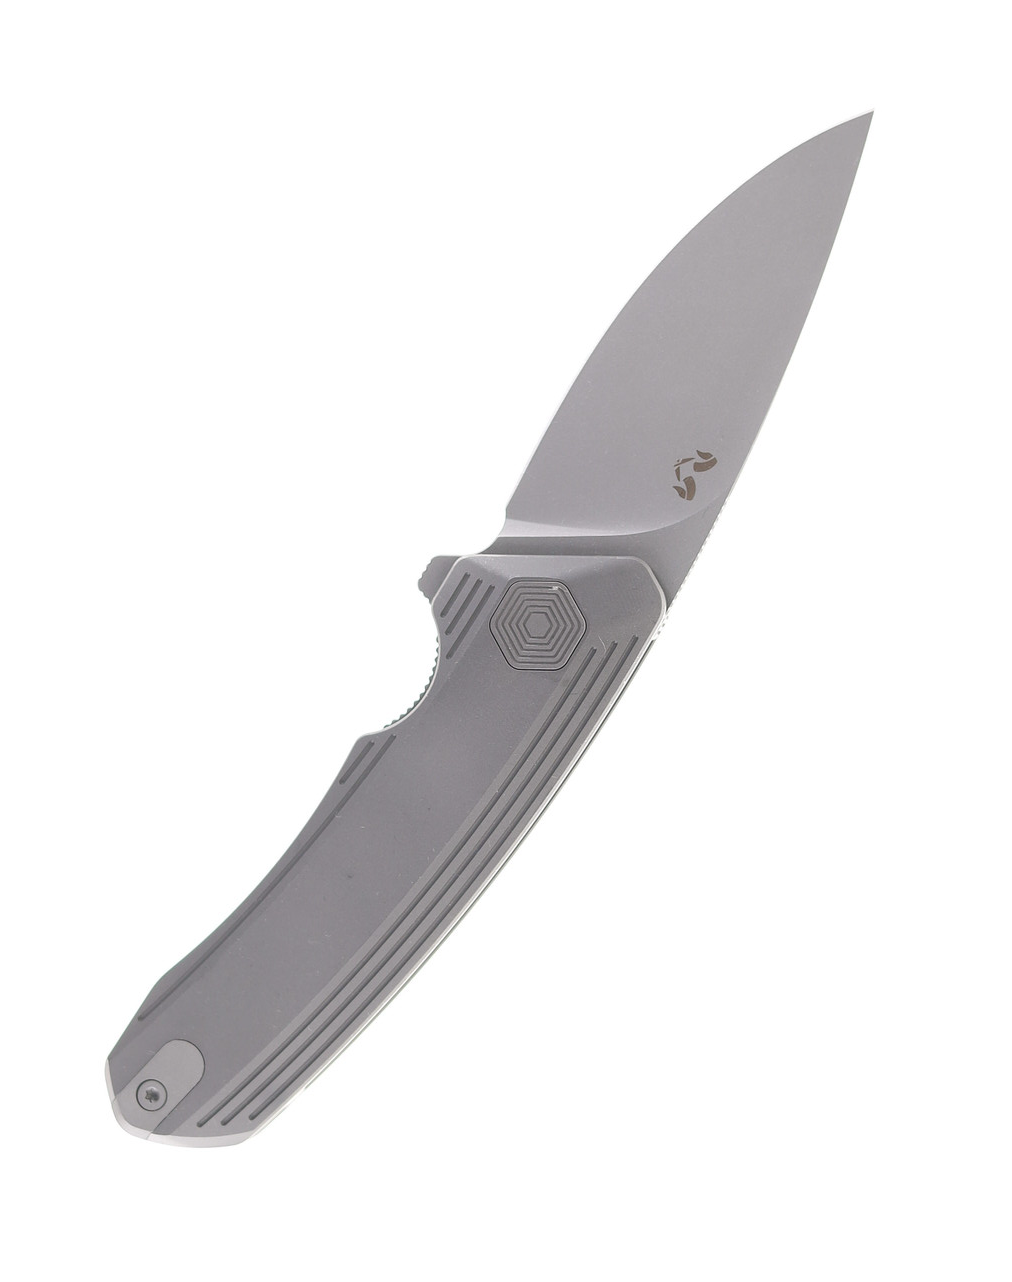 product image for Damned Designs Invictus Folding Knife Stonewash Titanium Handle S35VN Drop Point Plain Edge Stonewash Finish